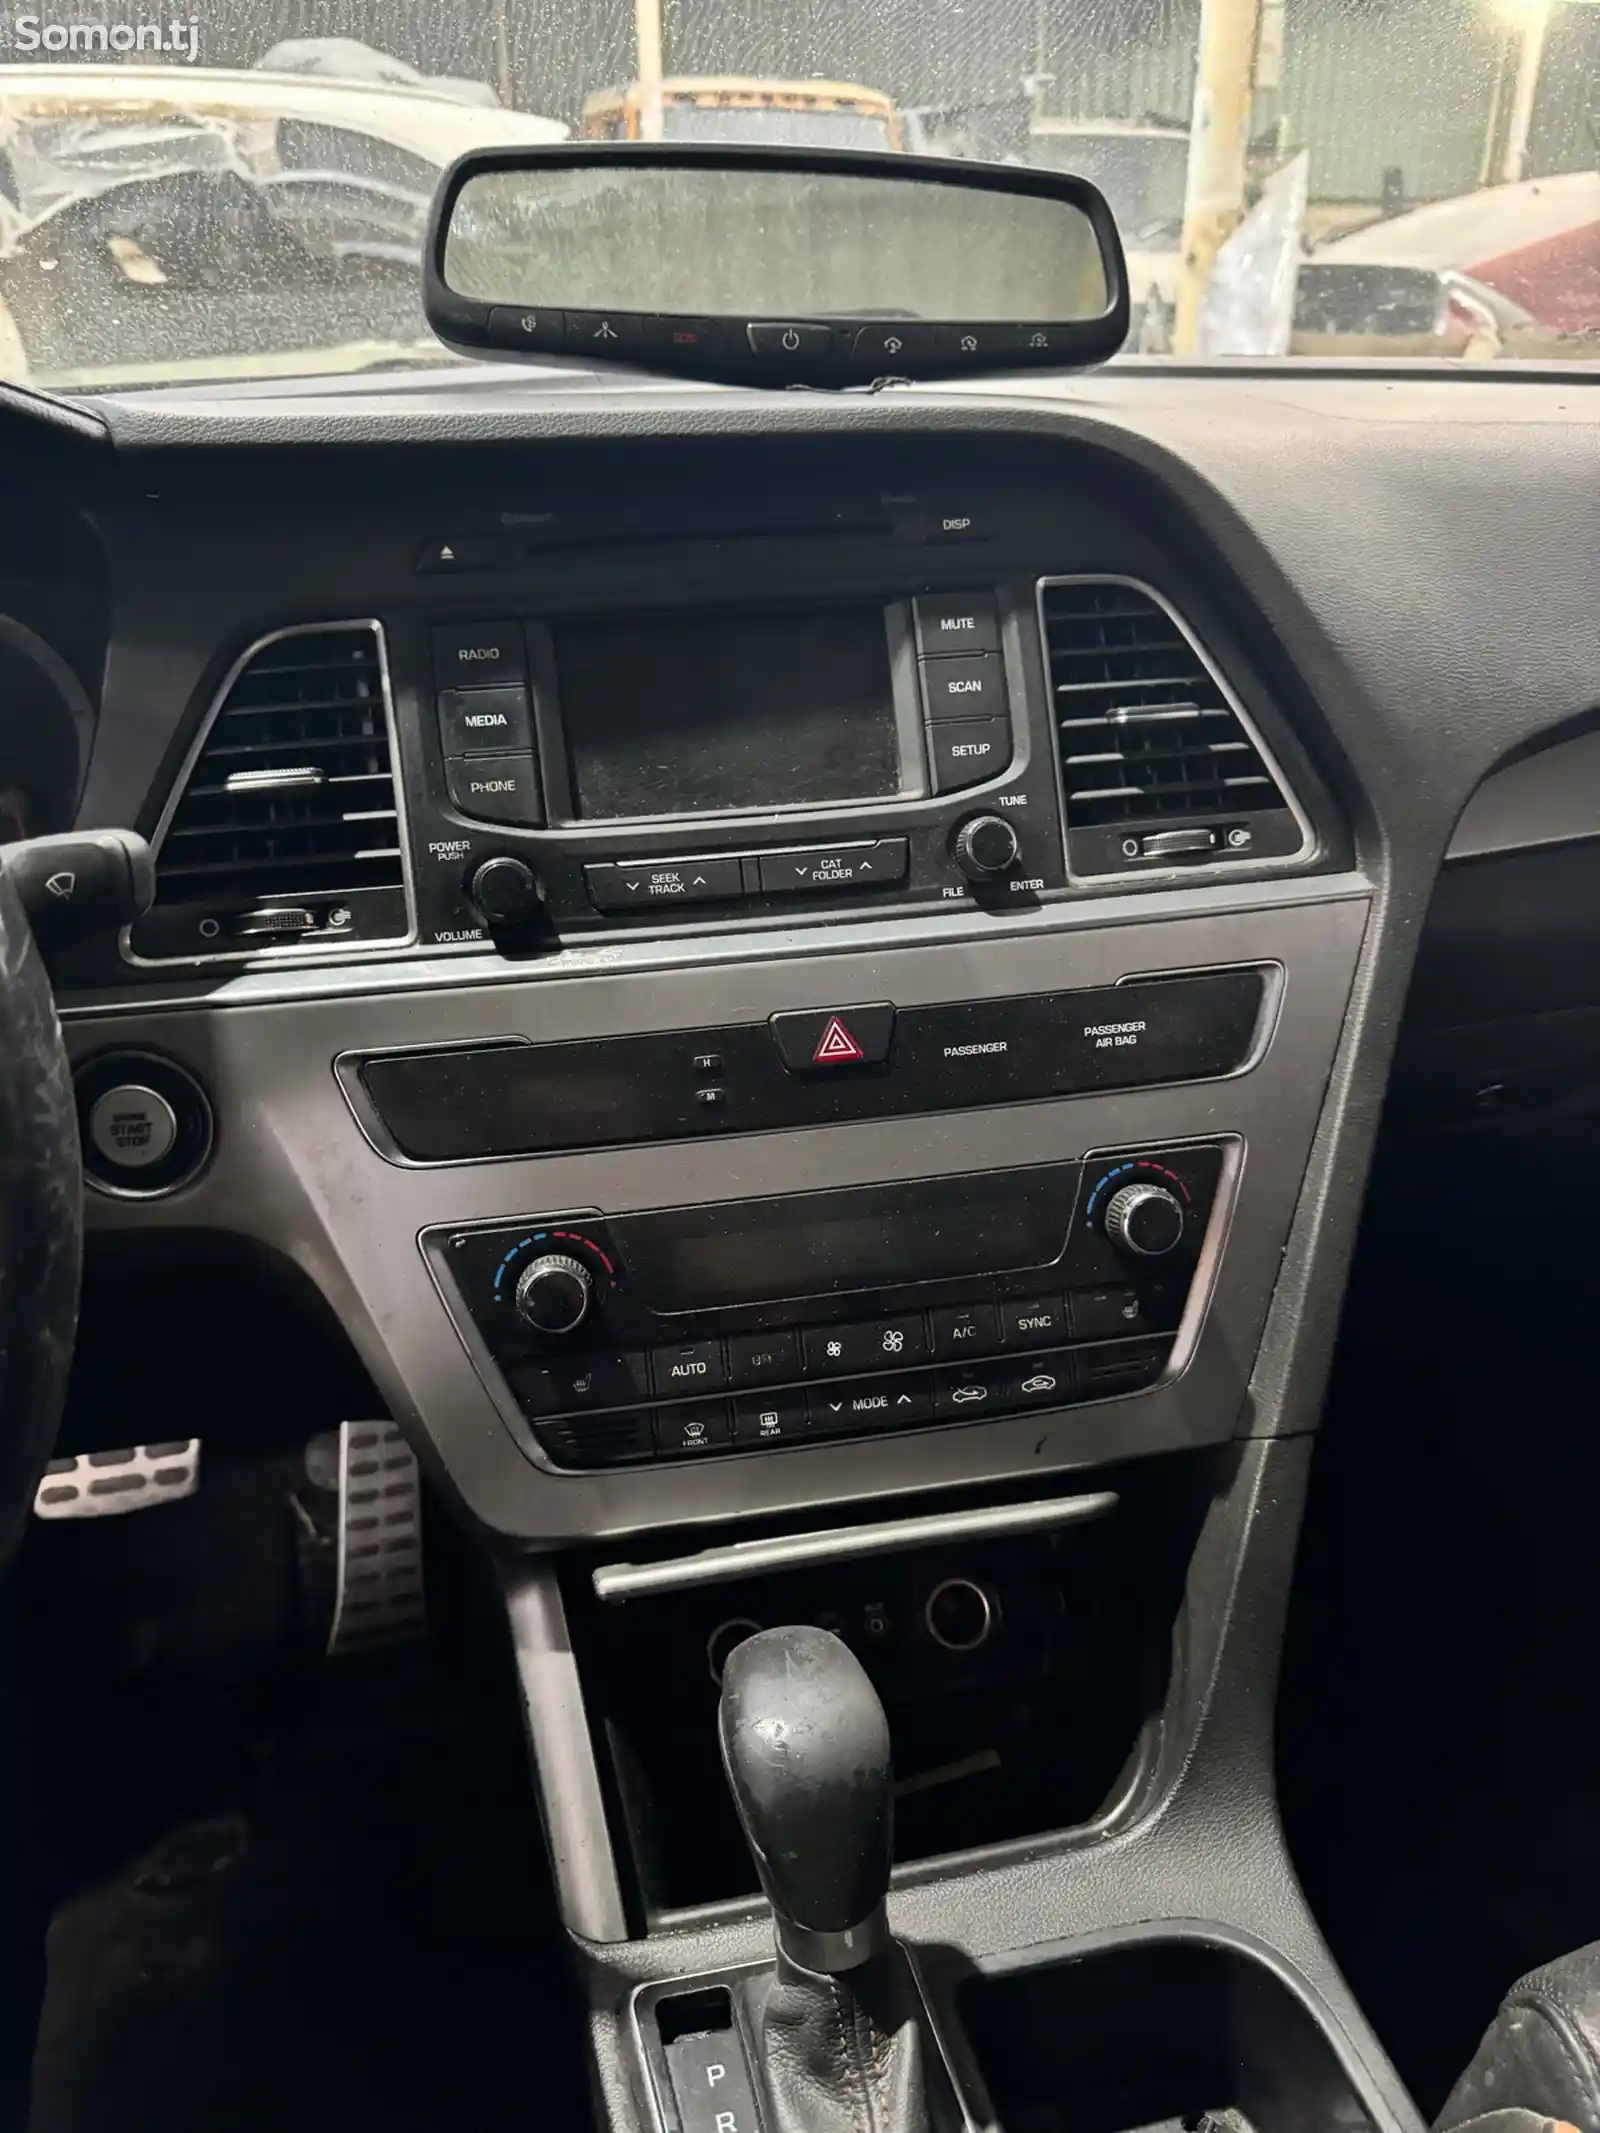 Hyundai Sonata, 2015-12